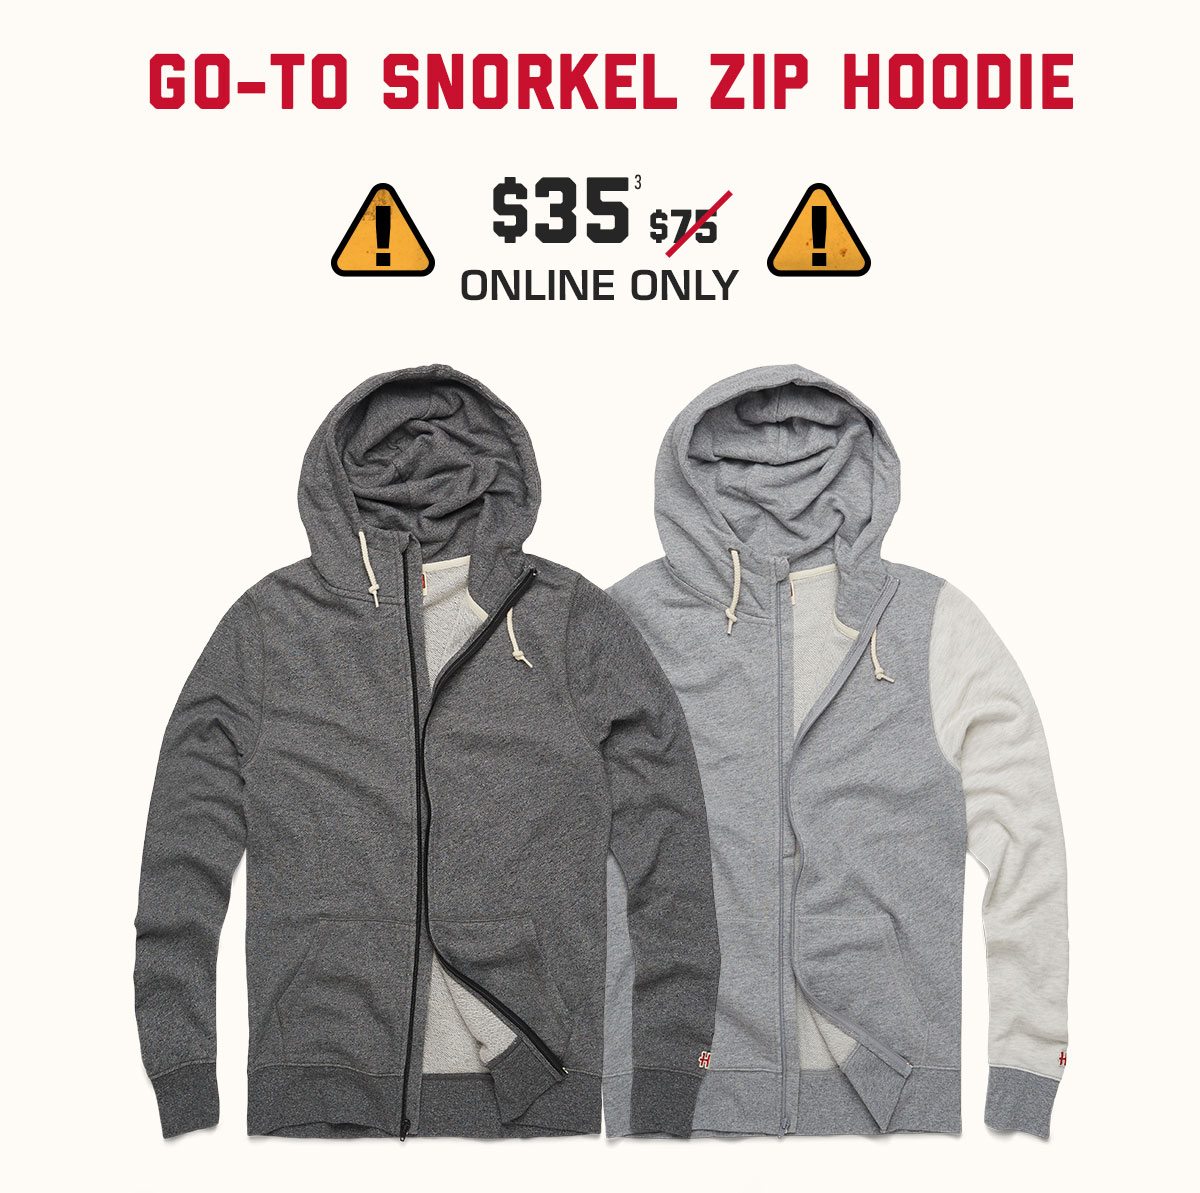 Go-To Snorkel Zip Hoodie, $35* online only.